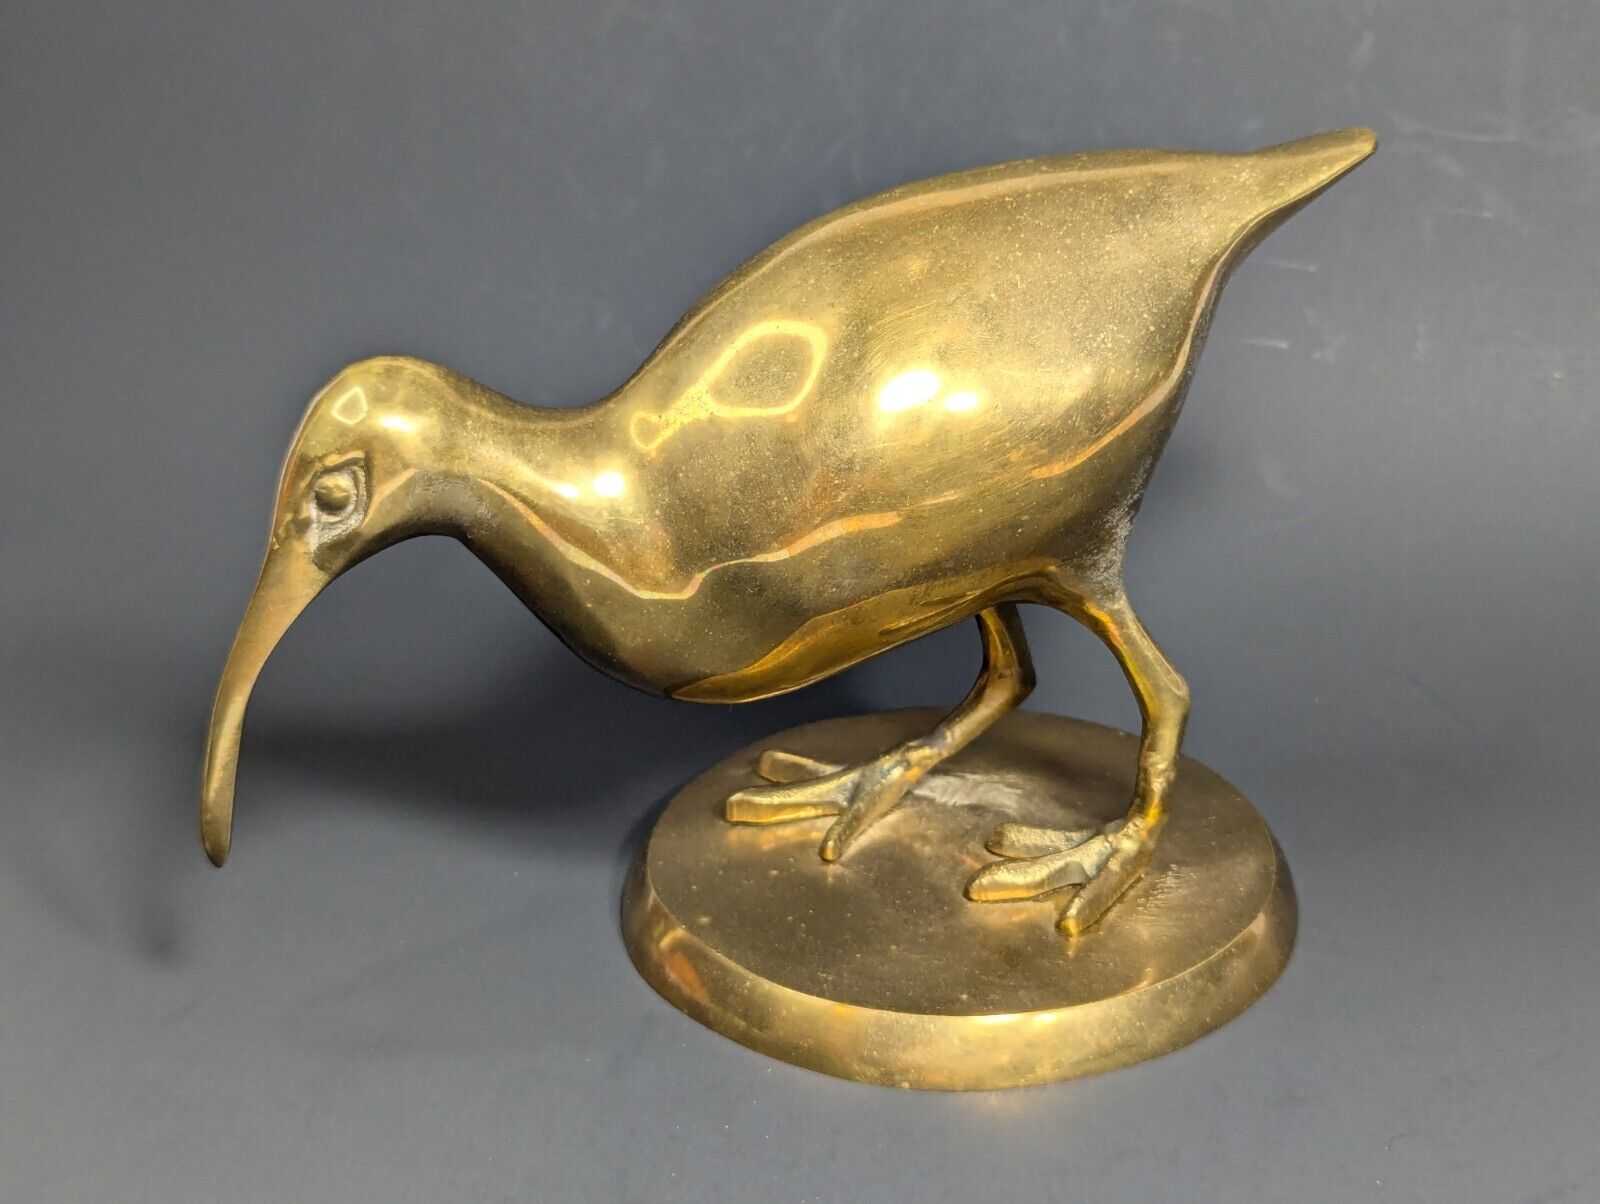 Vintage Collectible Brass Kiwi Bird Figurine Sculpture